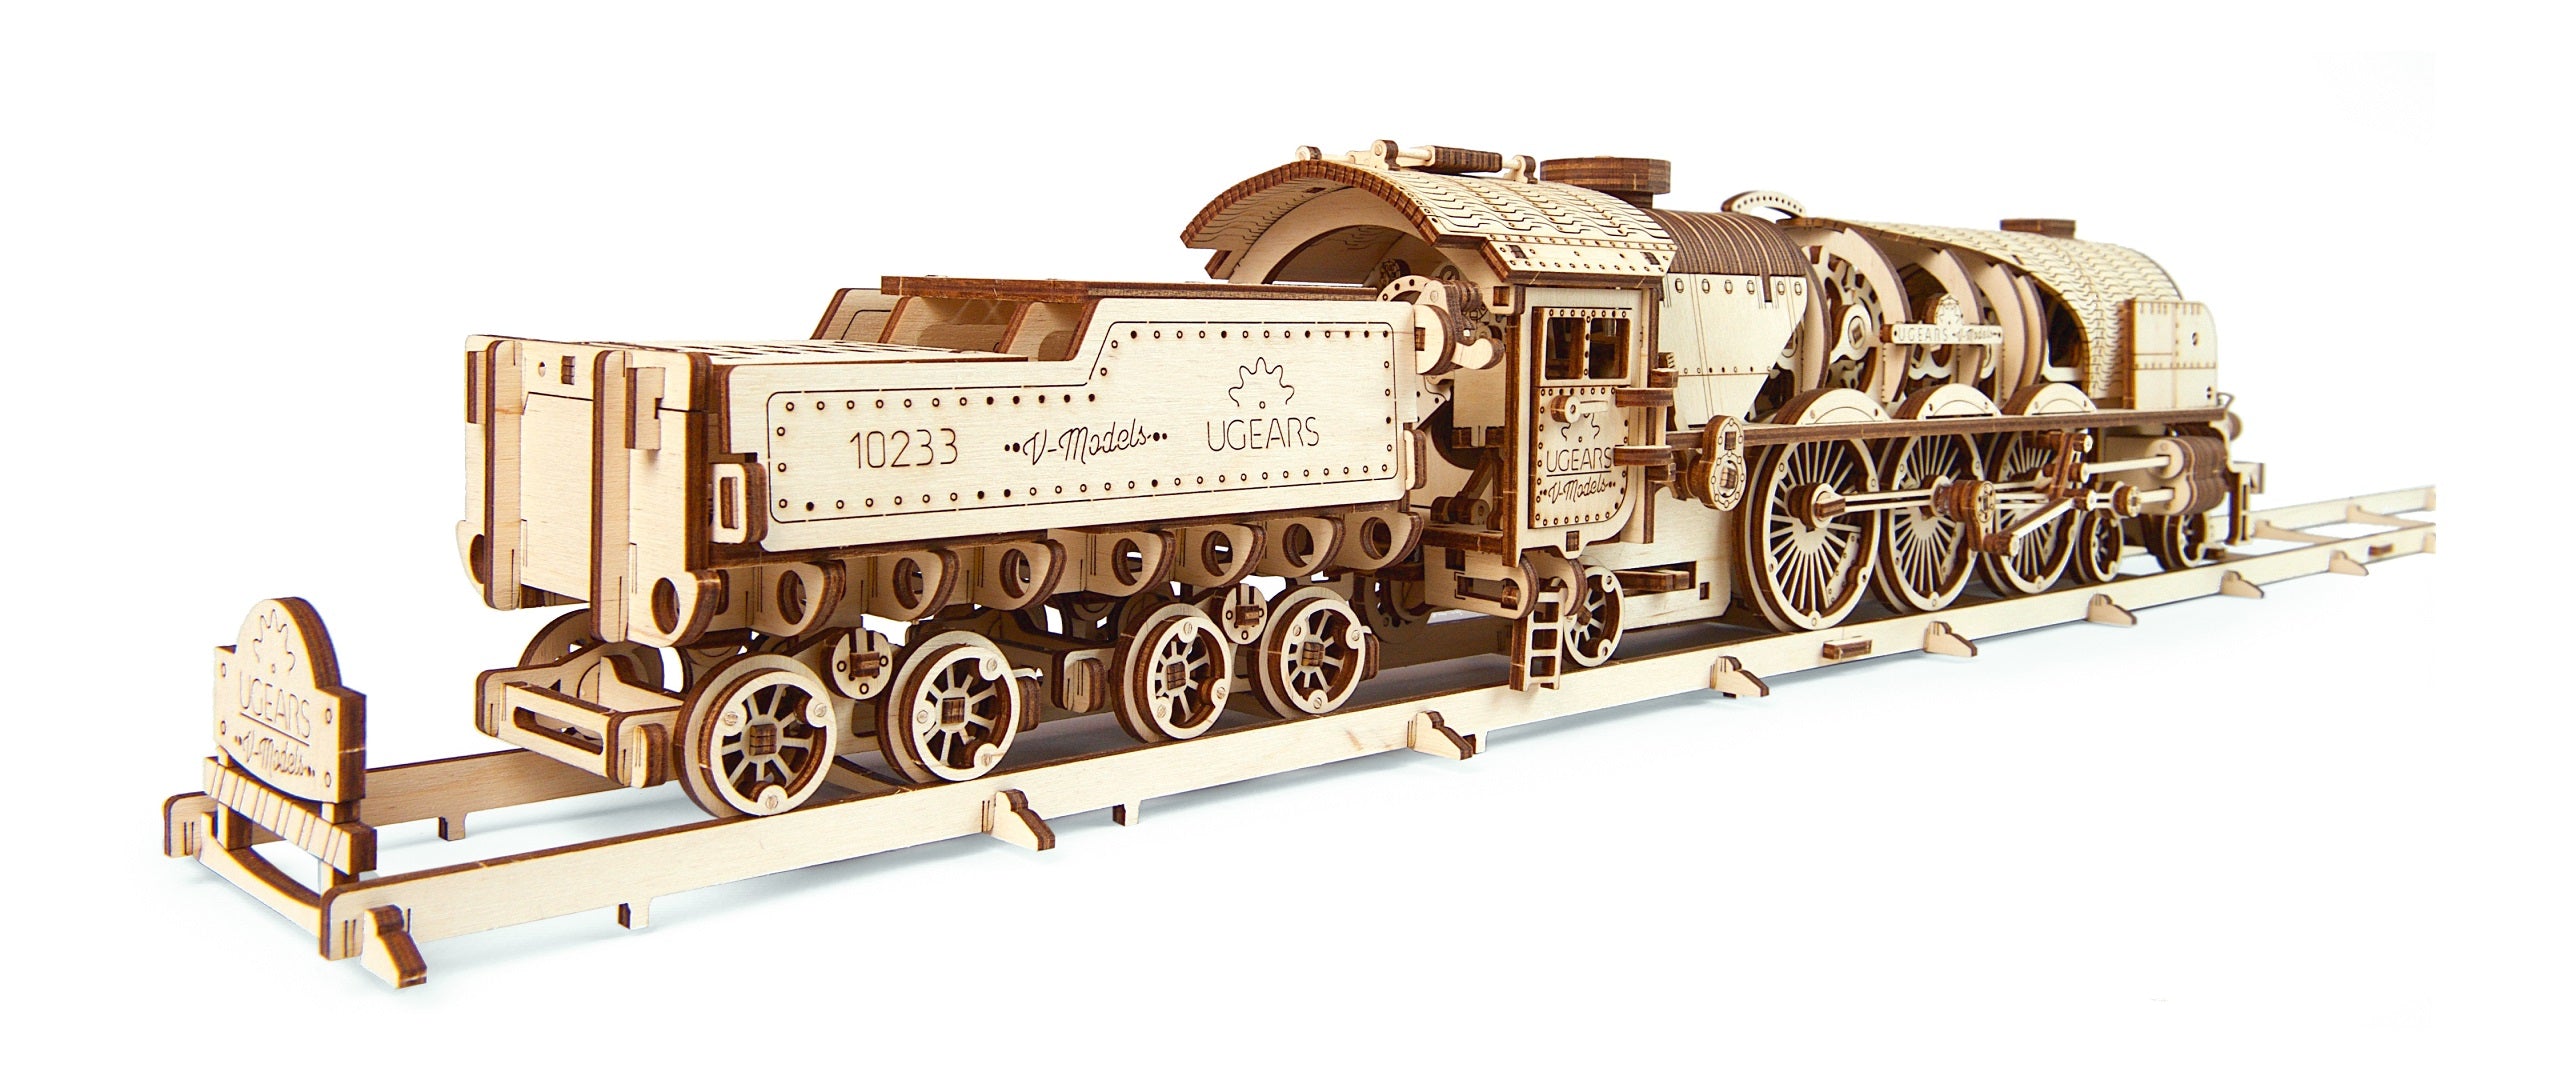 ダークブラウン 茶色 Ugears ユーギアーズ V-Express Steam Train with Tender V-Express蒸気機関車  70058 通販